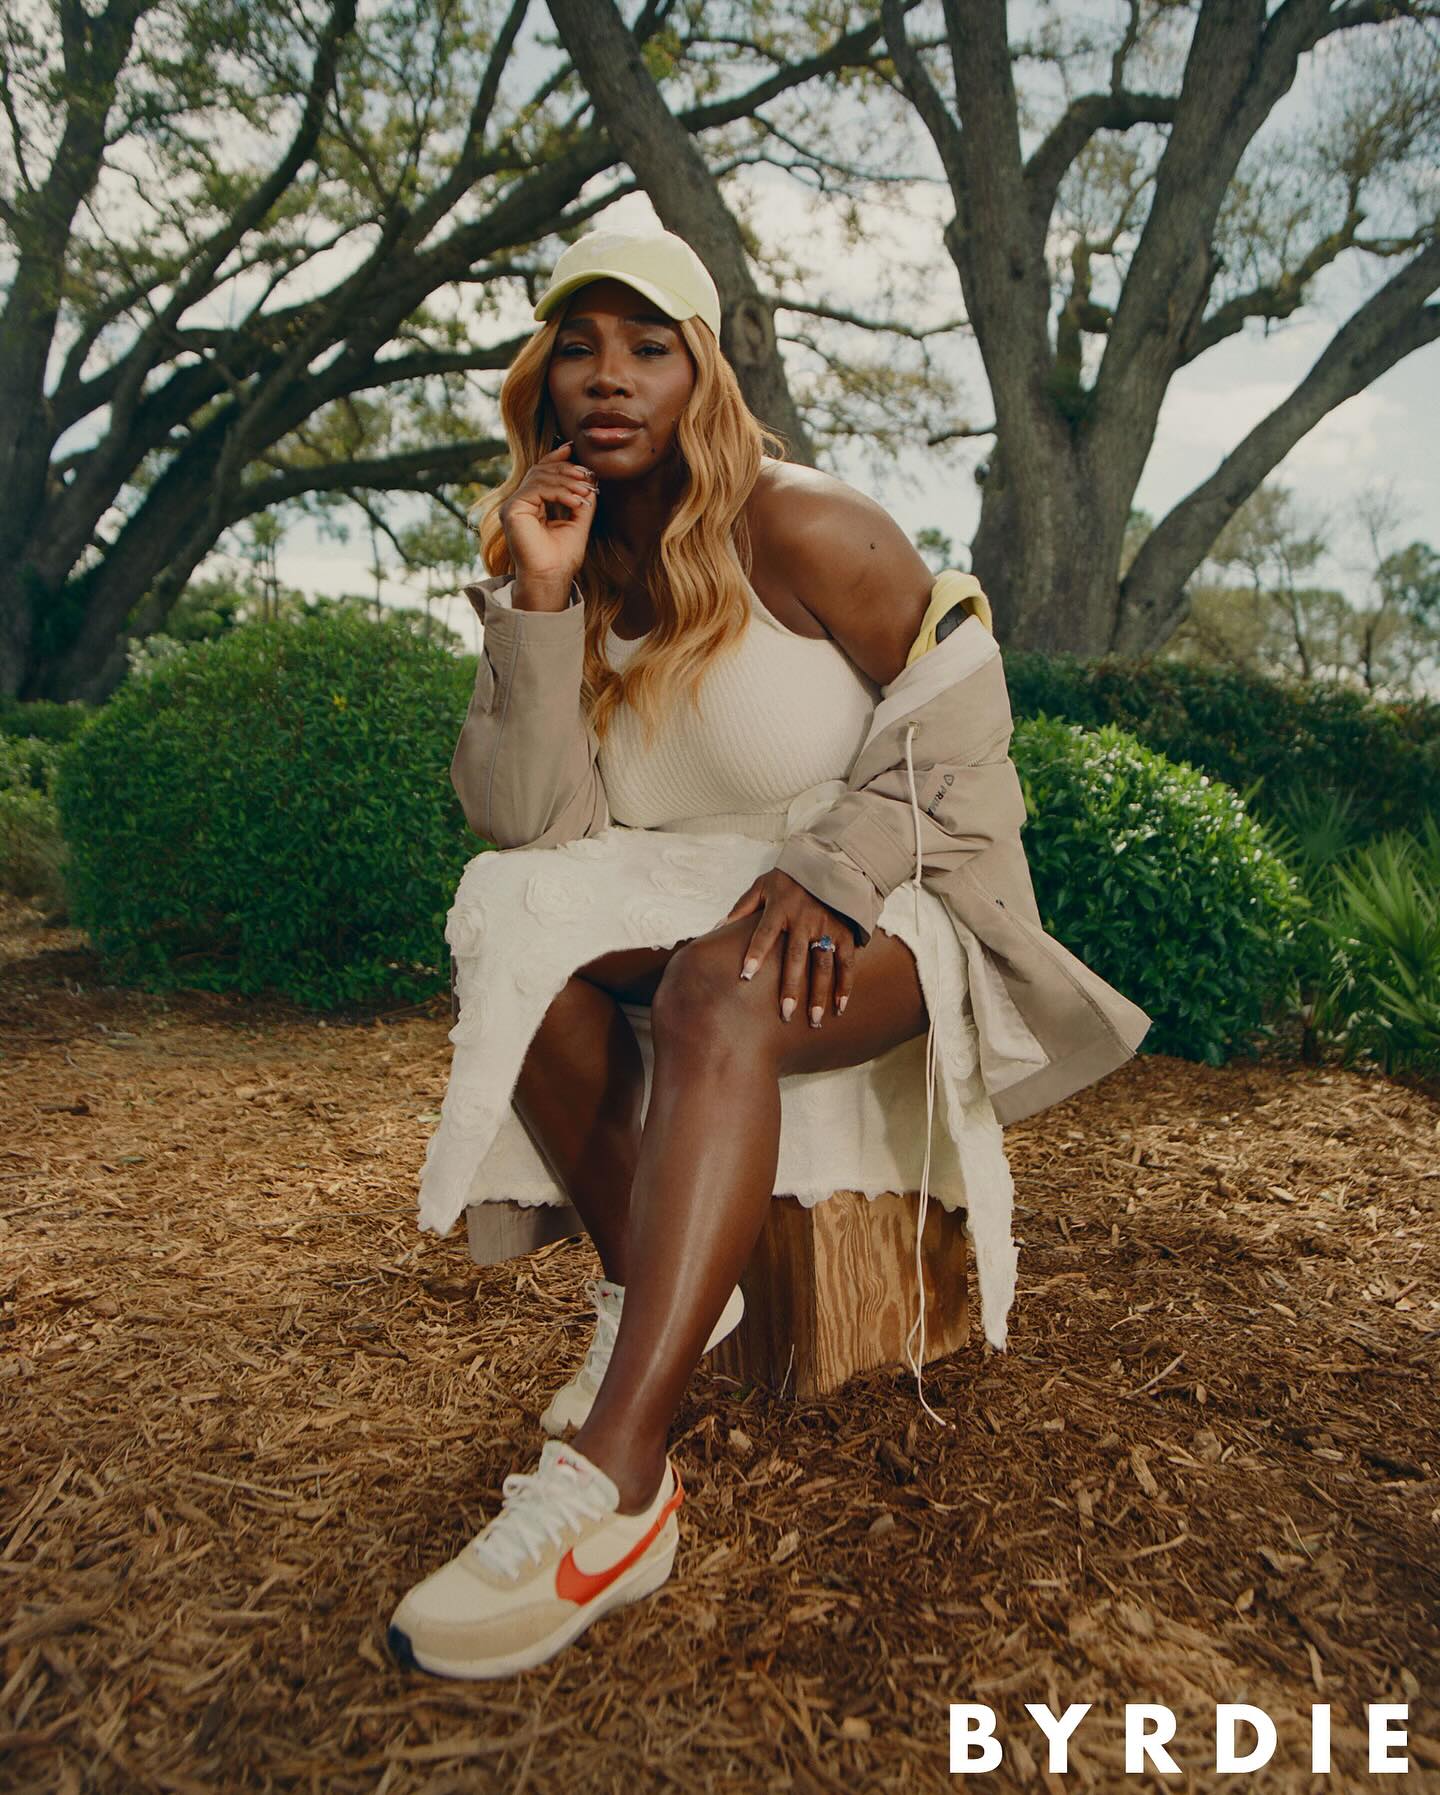 Η Serena Williams τώρα και στον χώρο της ομορφιάς λανσάροντας τη σειρά μακιγιάζ Wyn Beauty